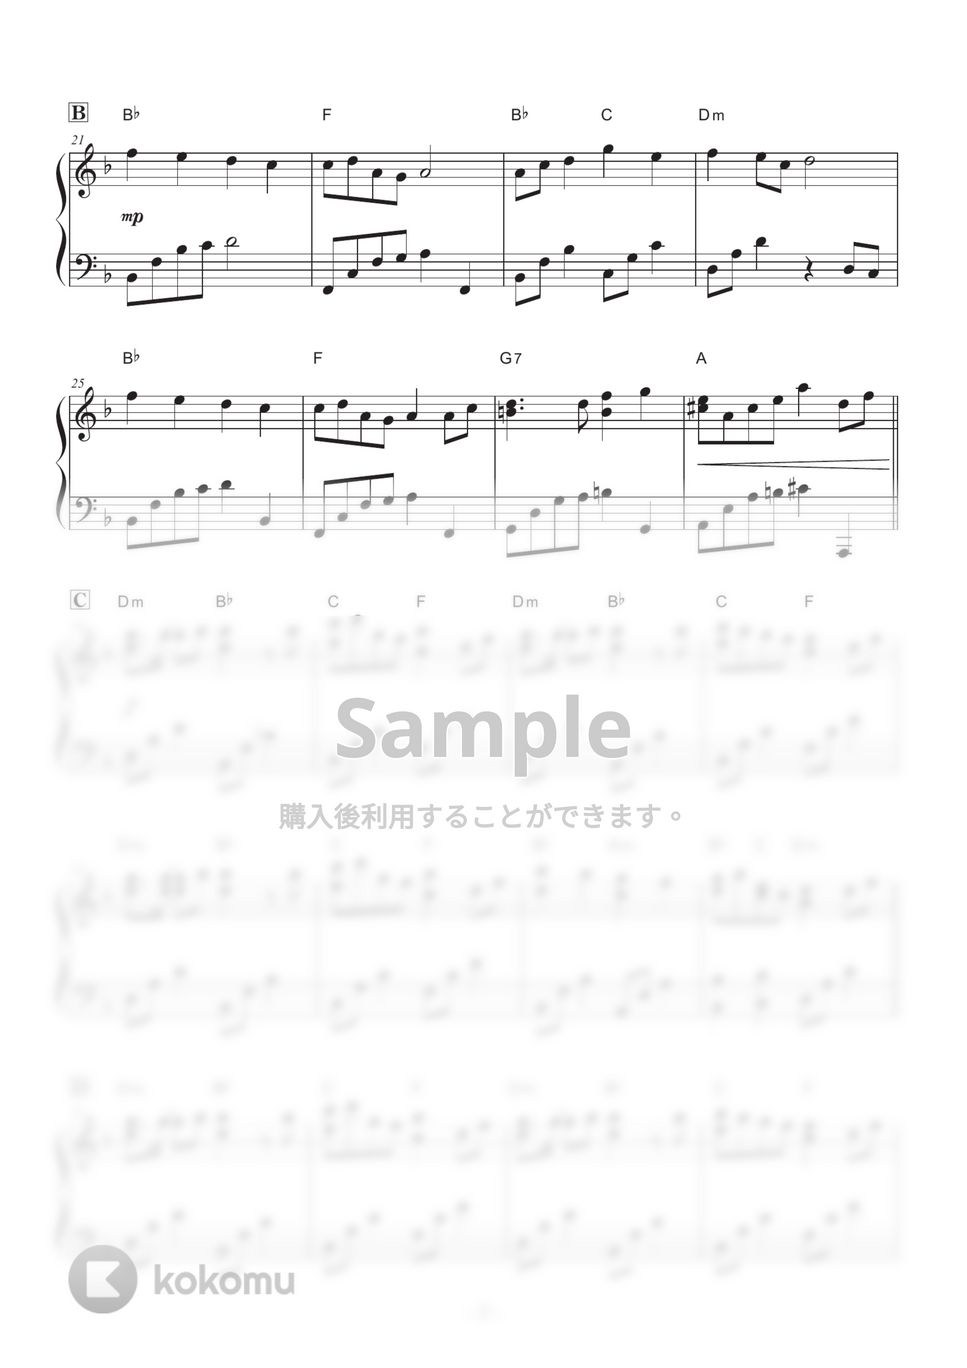 和楽器バンド - 千本桜～バラードバージョン～ by ABIA Music